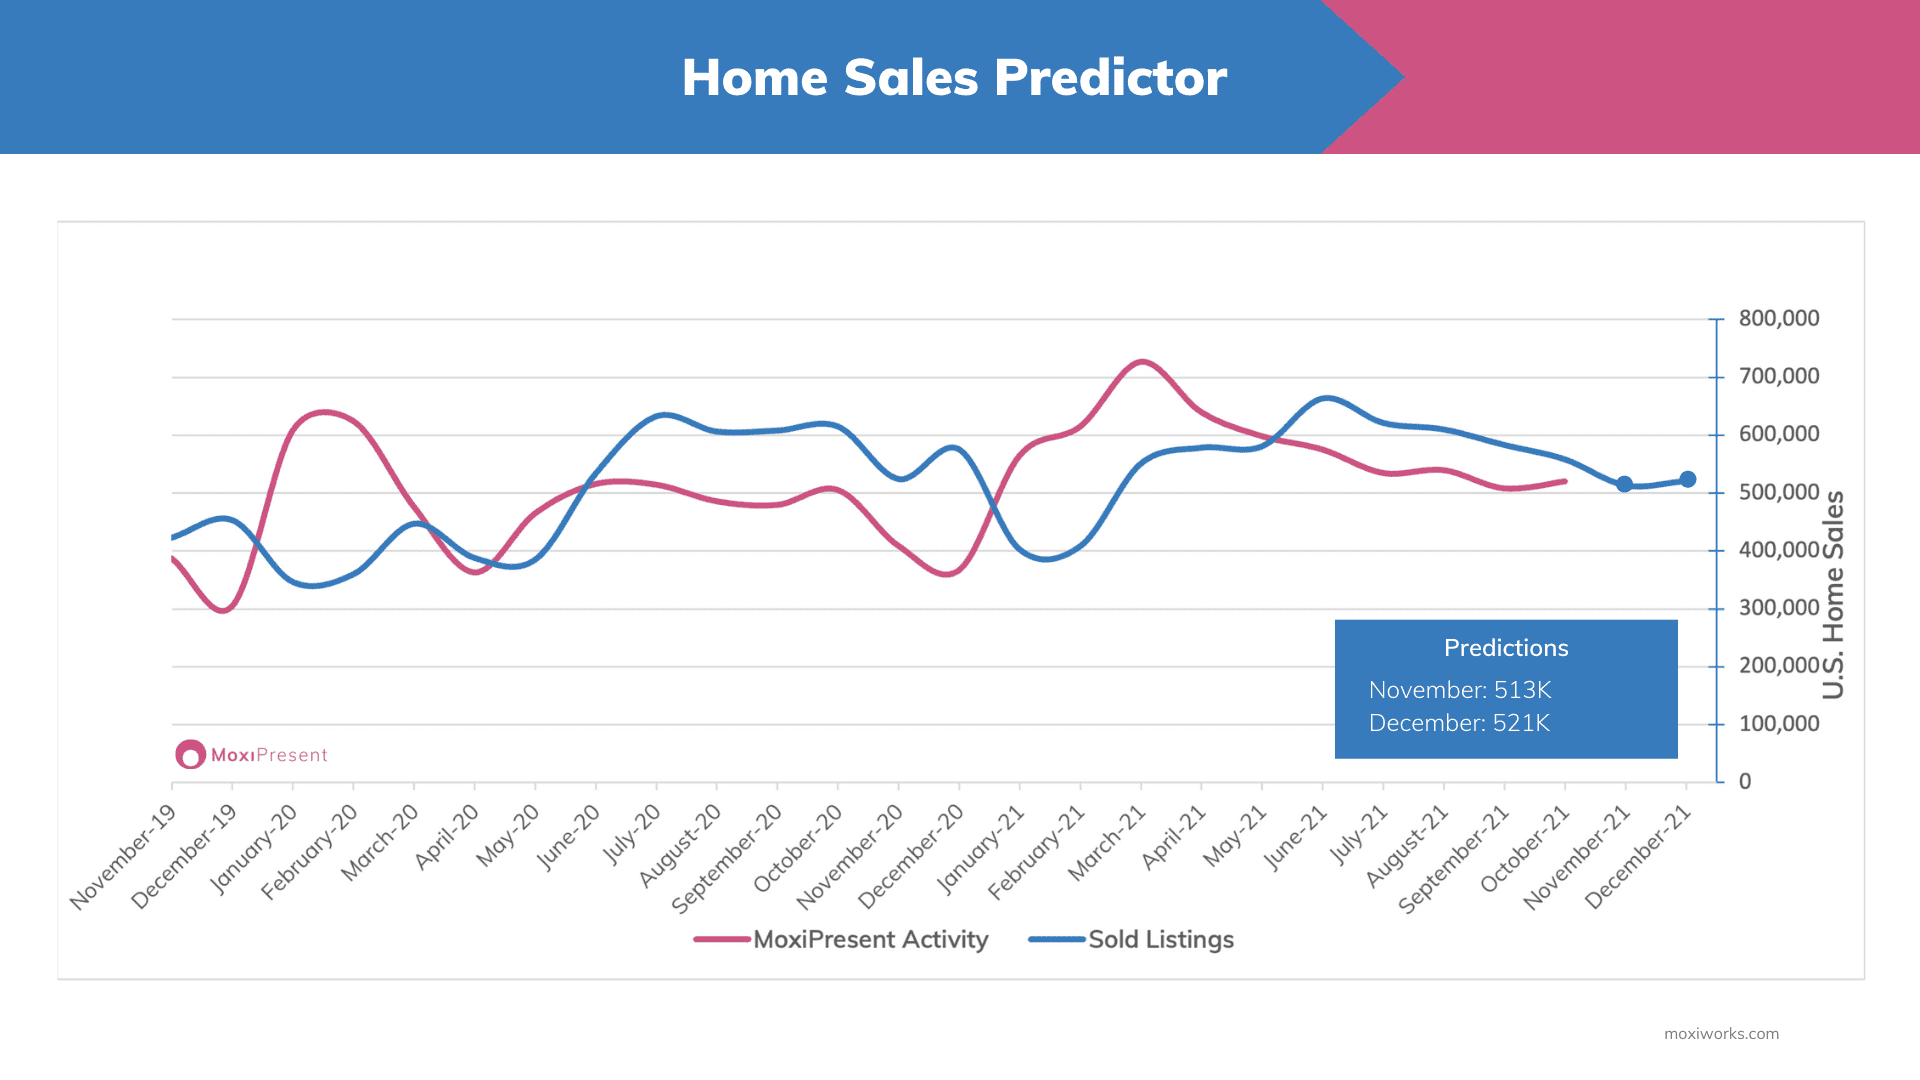 MoxiWorks November Home Sales Predictor